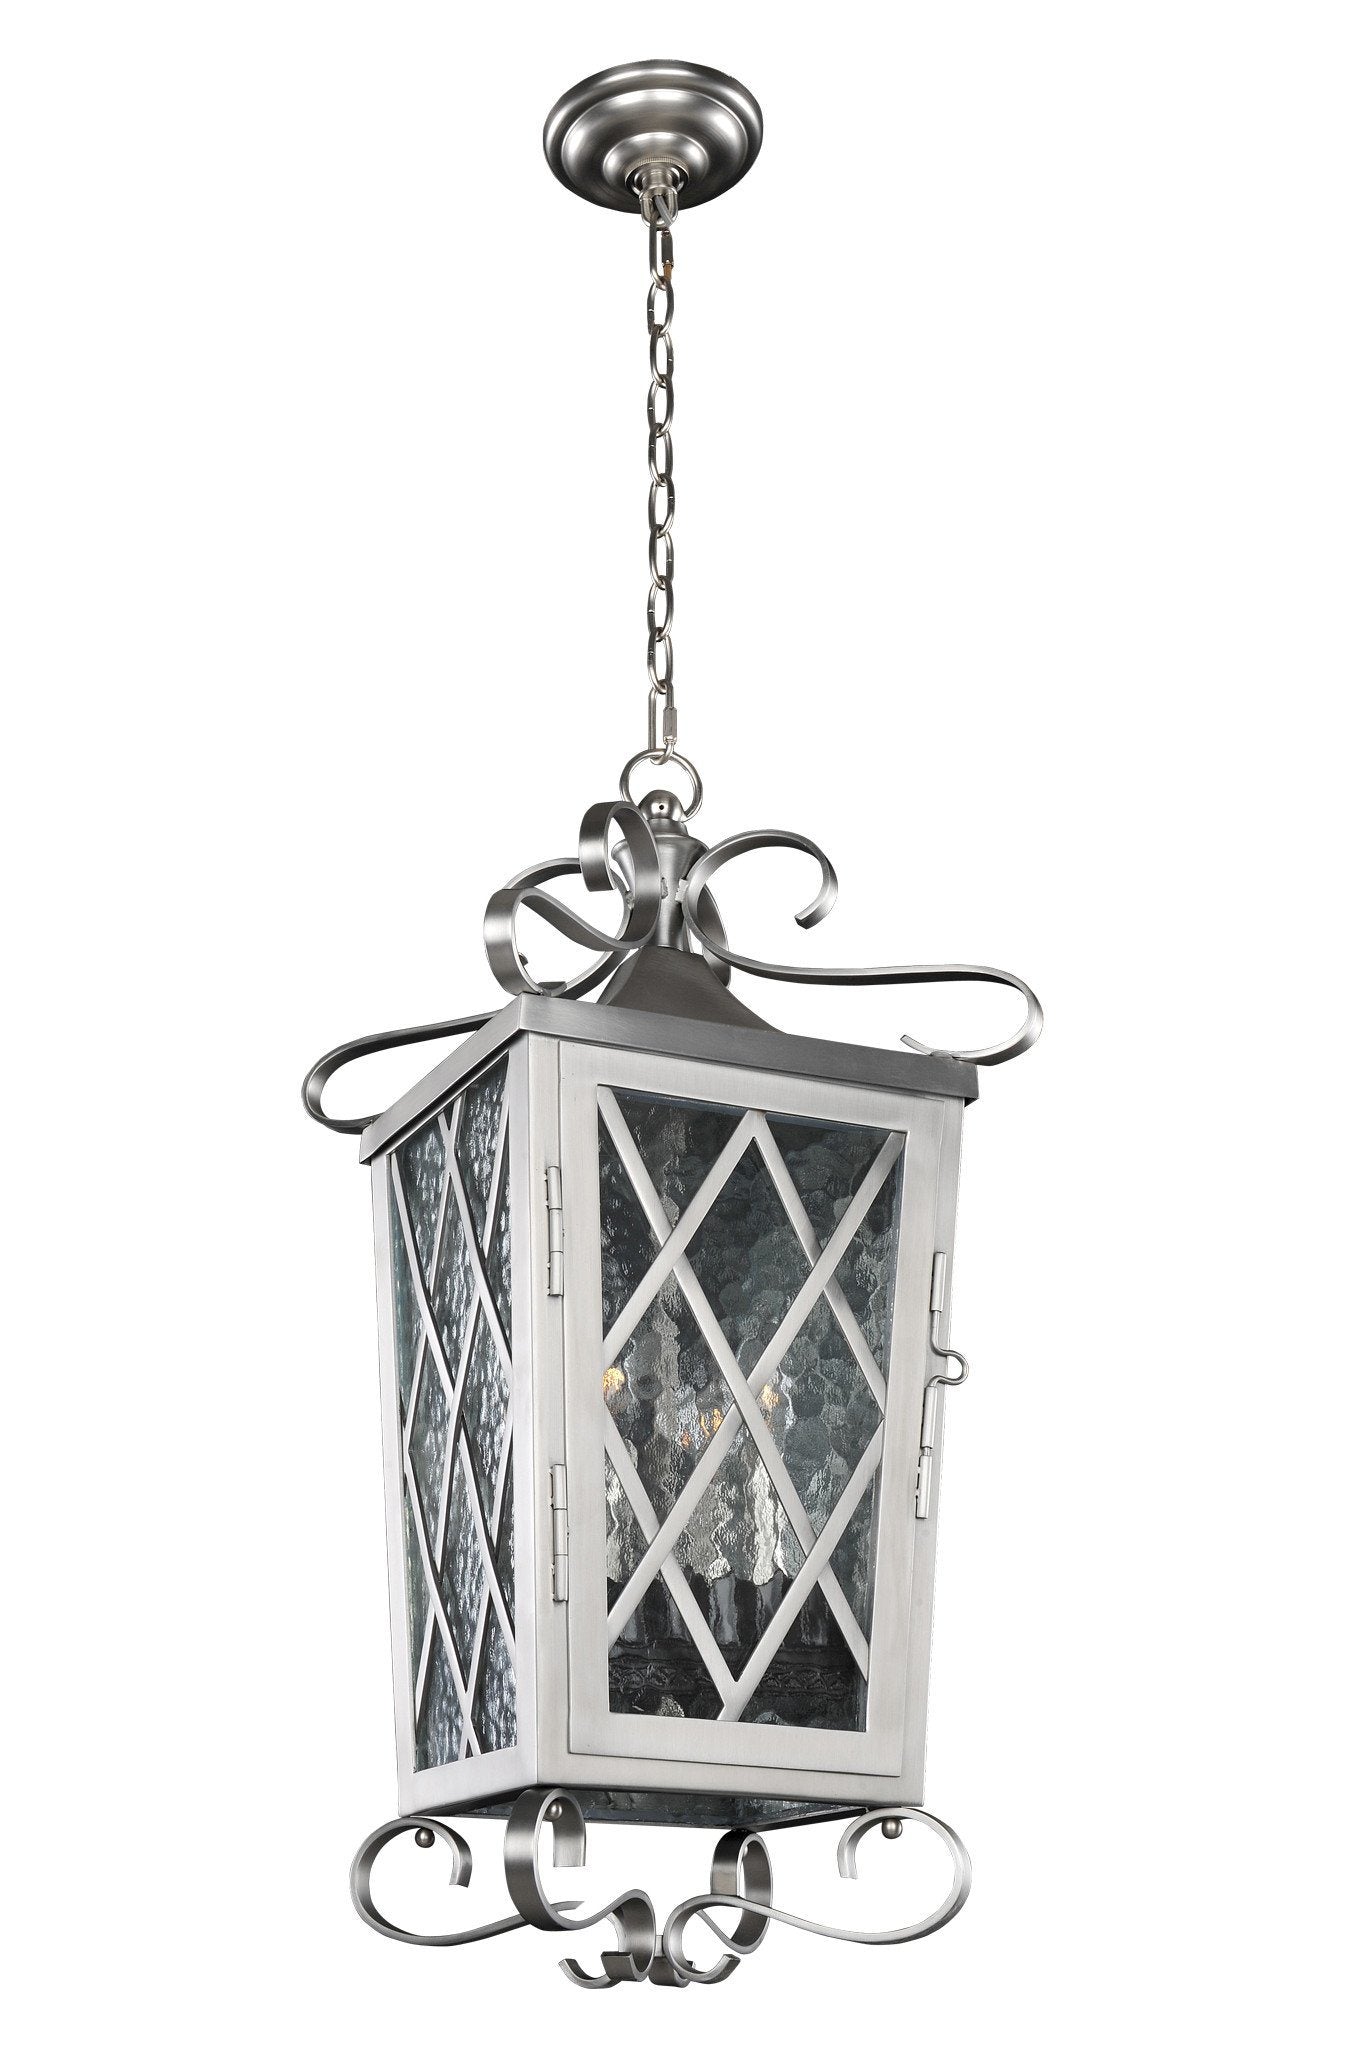 Trellis Medium Hanging Lantern Outdoor Kalco 